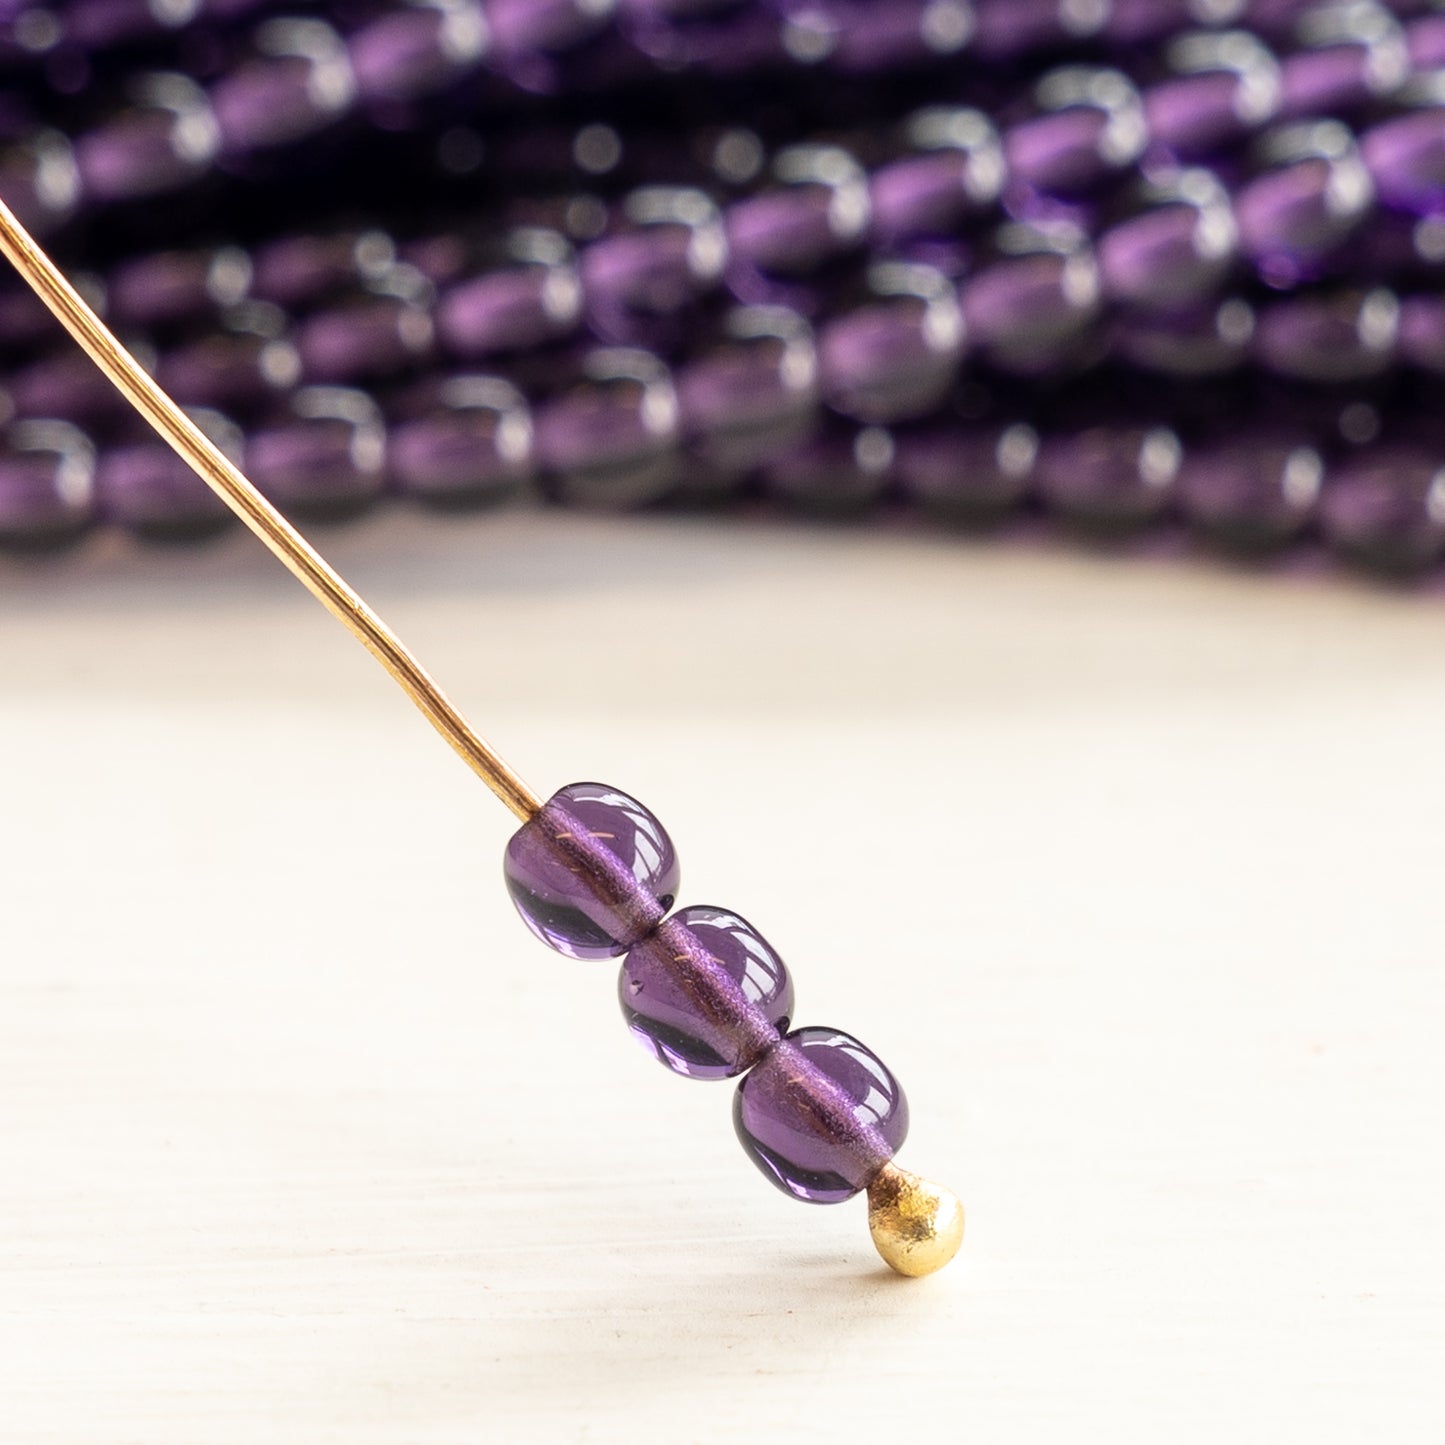 4mm Round Glass Beads - Purple Tanzanite - 100 Beads